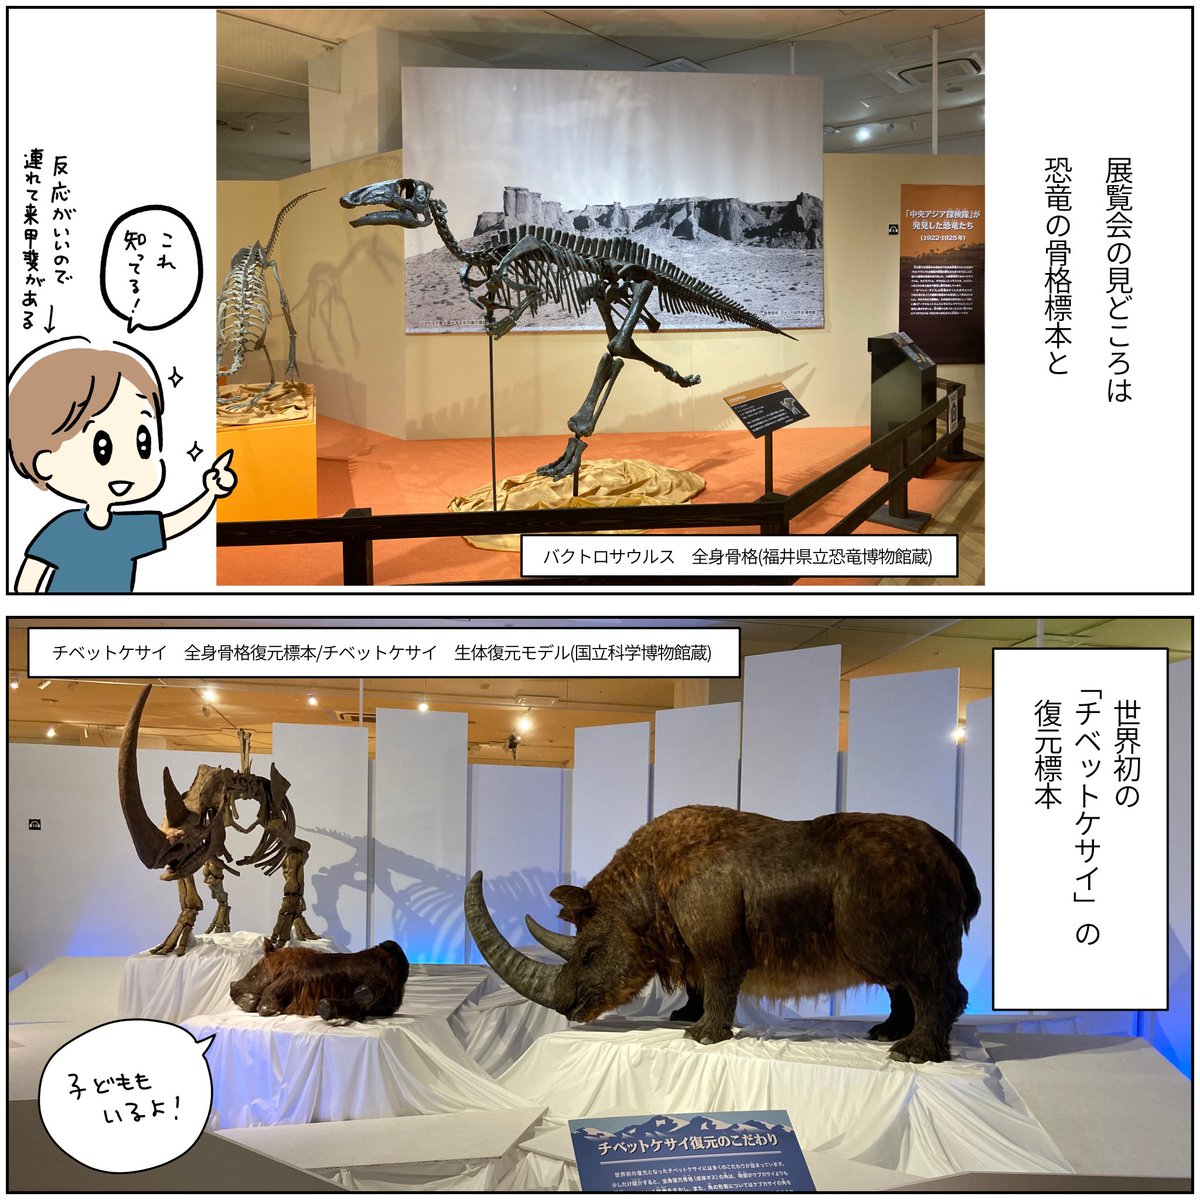 展覧会レポ漫画

化石ハンター展
ATCギャラリー(大阪)
⚠️9/24まで

化石ハンターたちの発掘調査を追体験するような展示です。
会場の外にも子どもが楽しめる乗り物やゲームがあるので、恐竜好きのお子さんはすごく楽しめると思う! 